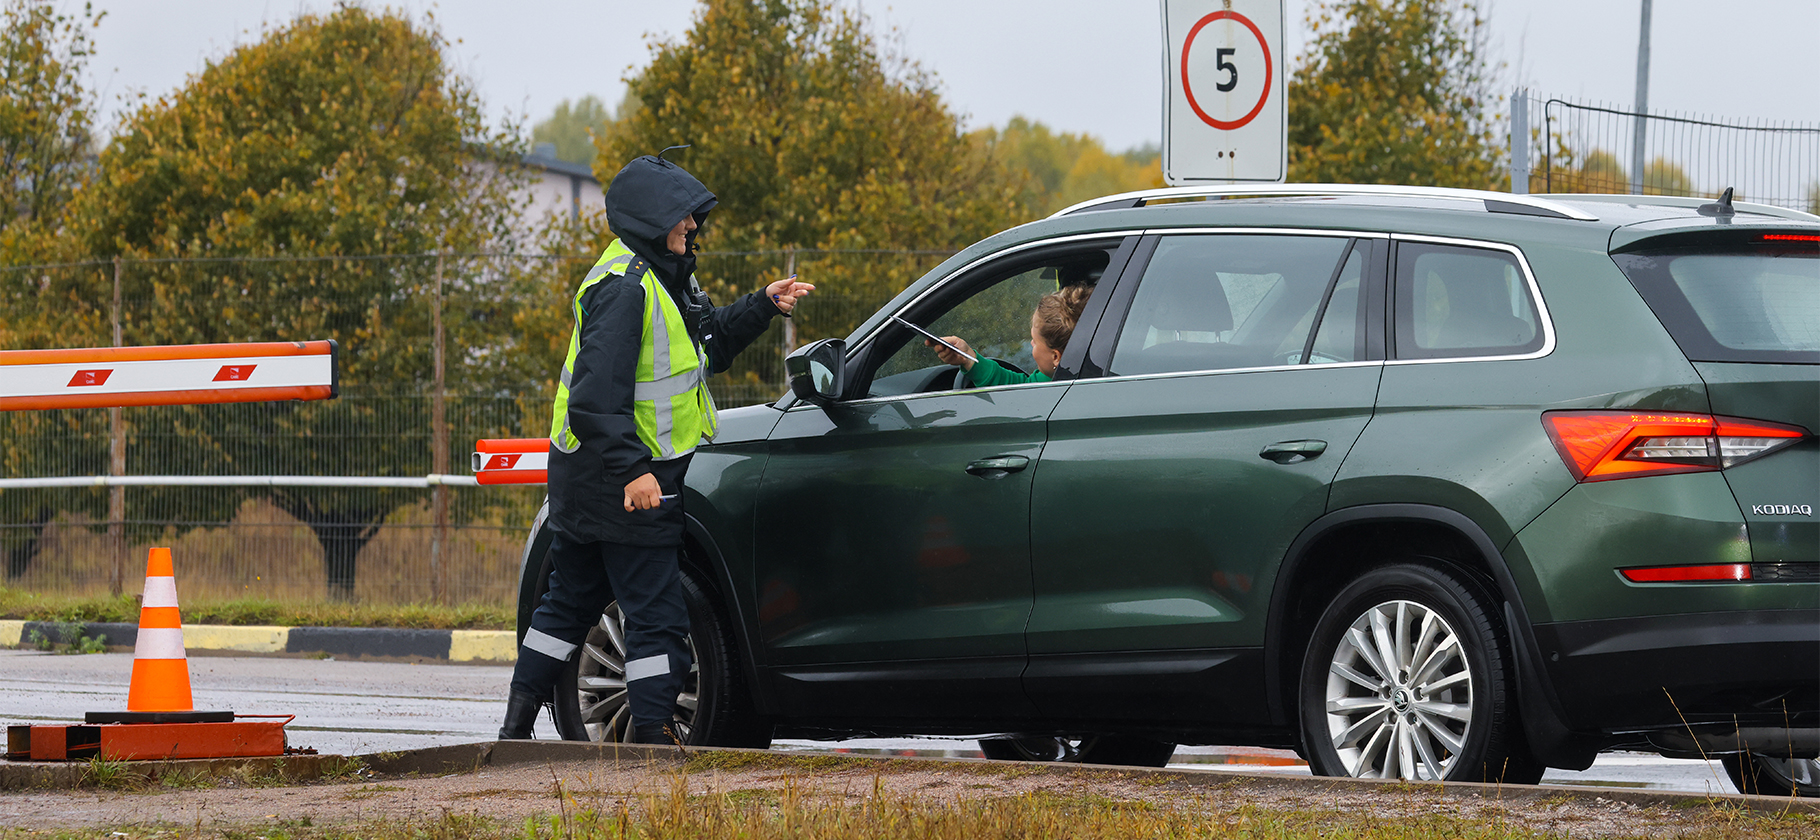 Финляндия запретила въезд автомобилей с российскими номерами c 16 сентября